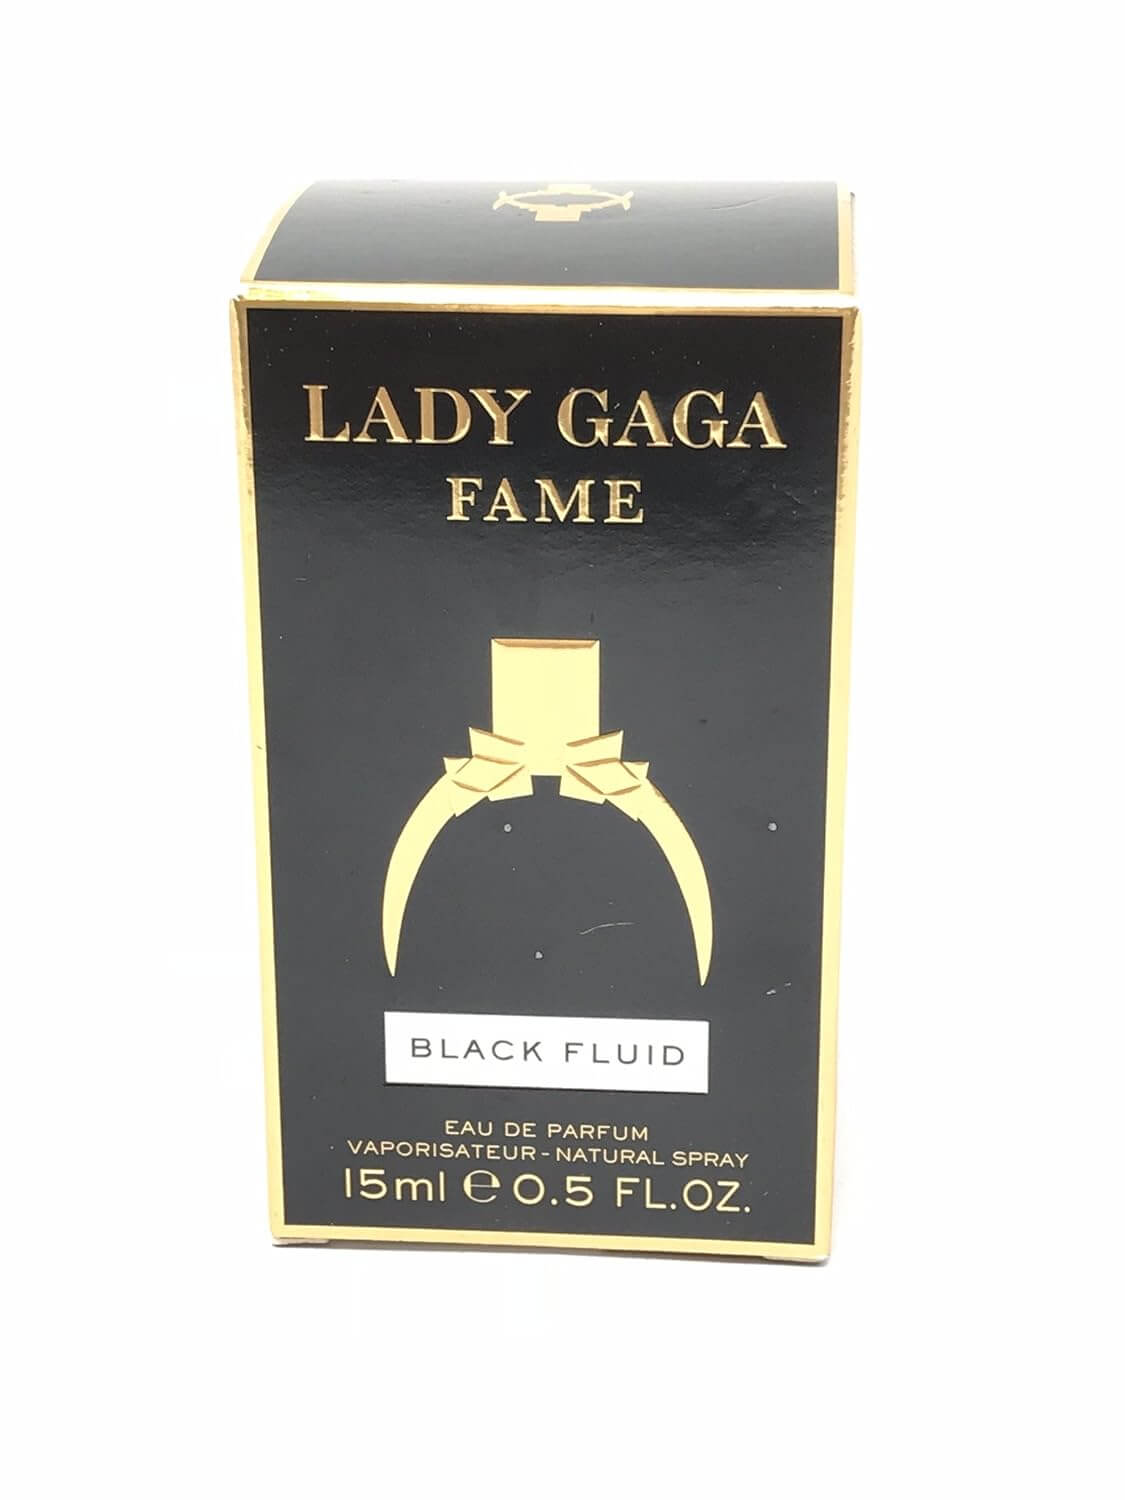  Fame by Lady Gaga